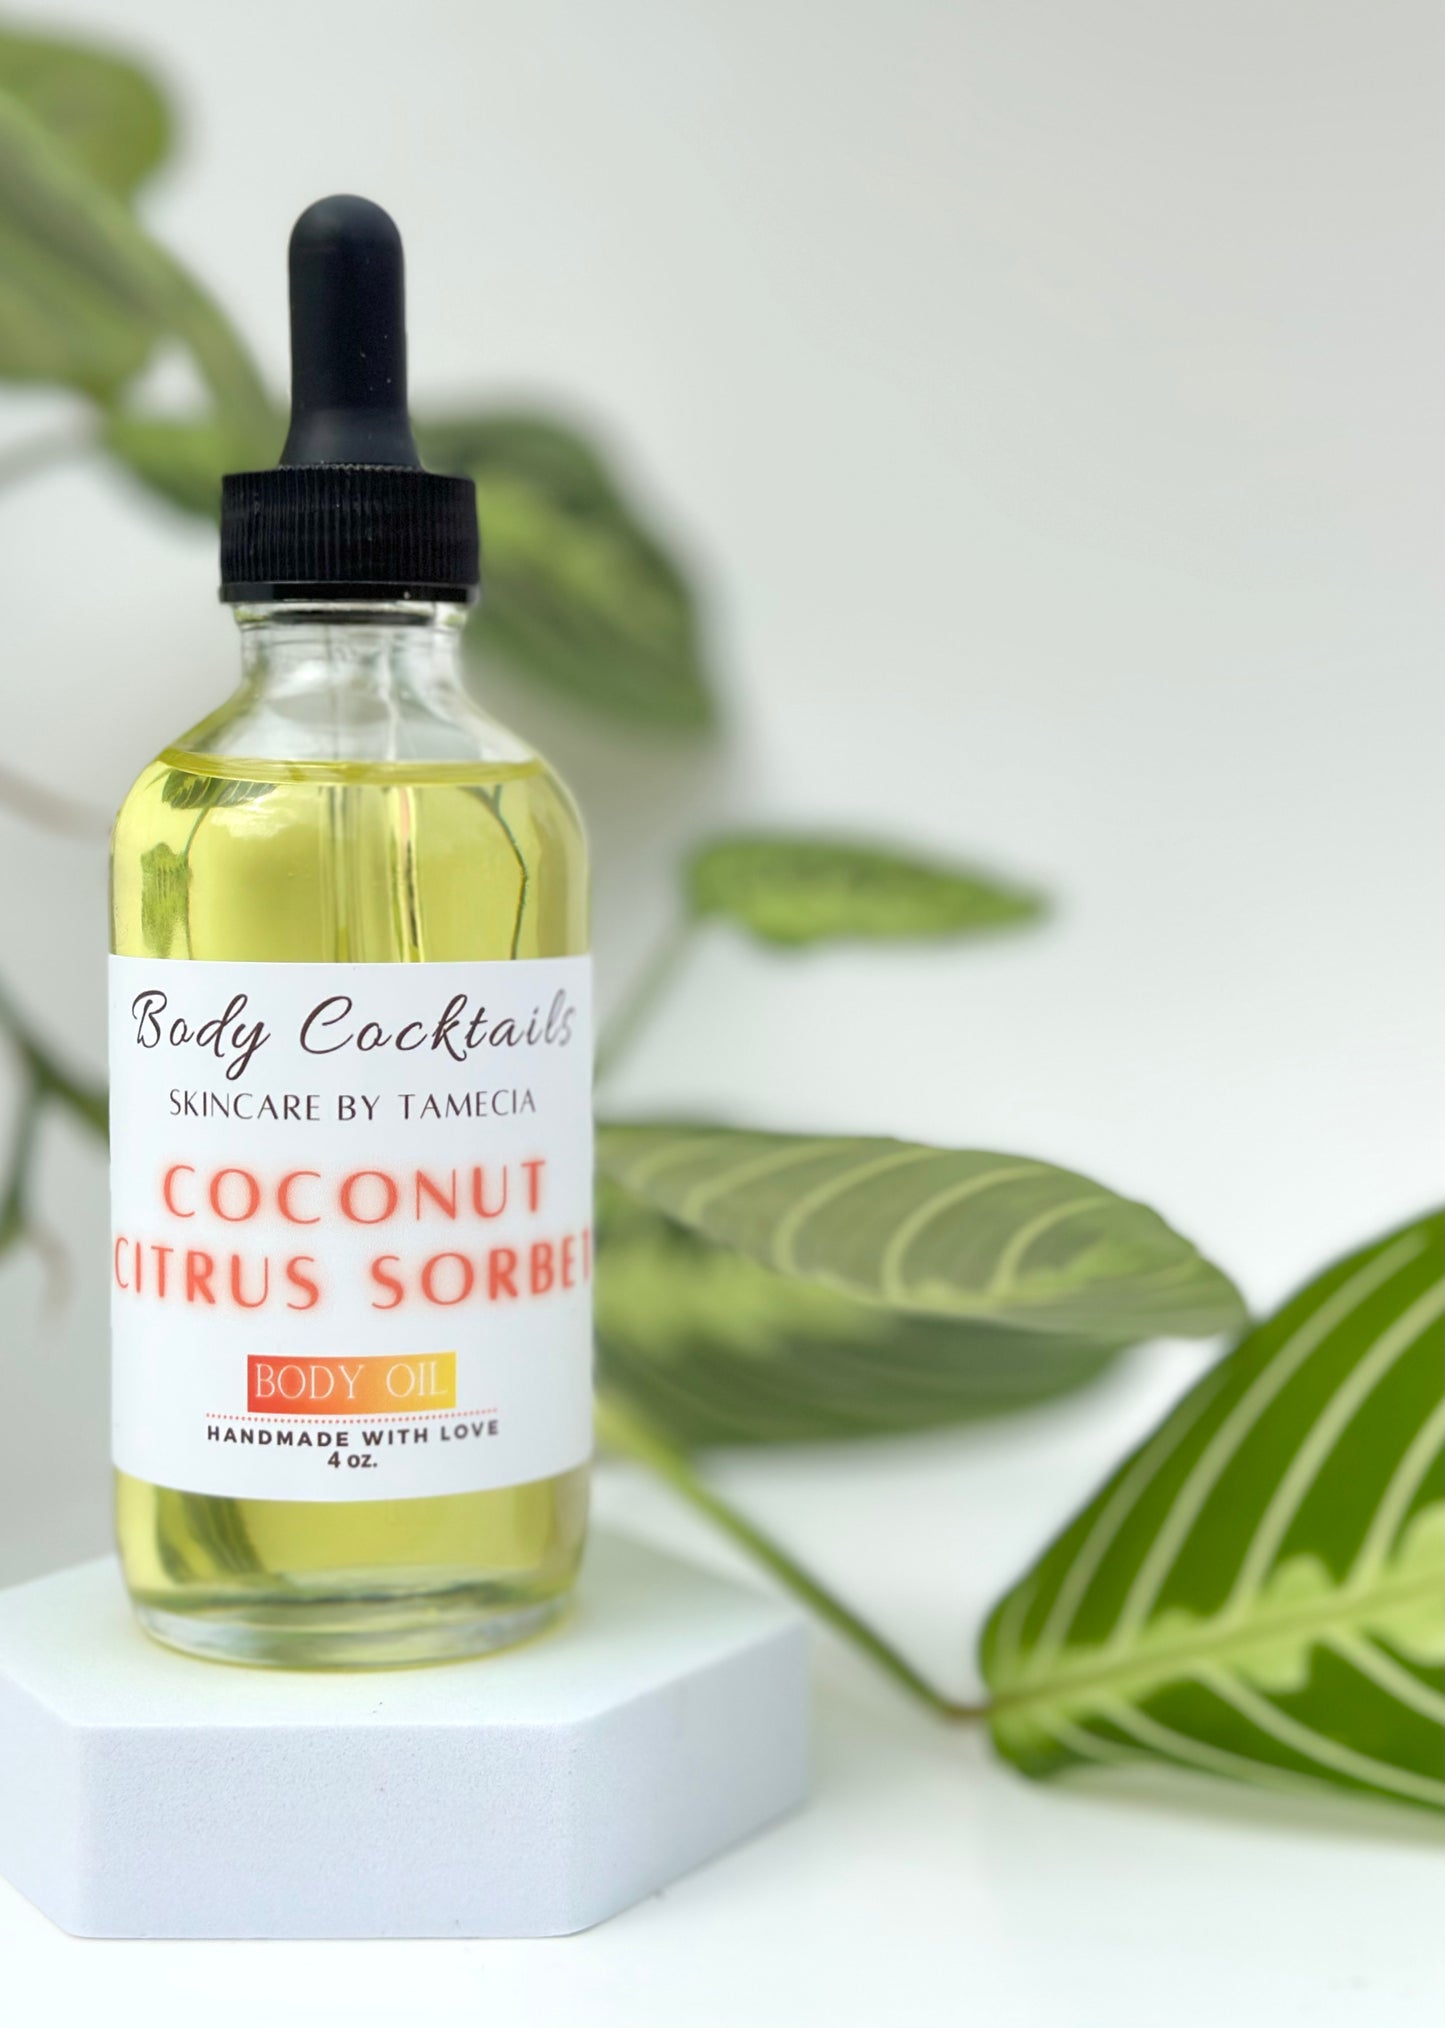 Coconut Citrus Sorbet Body oil